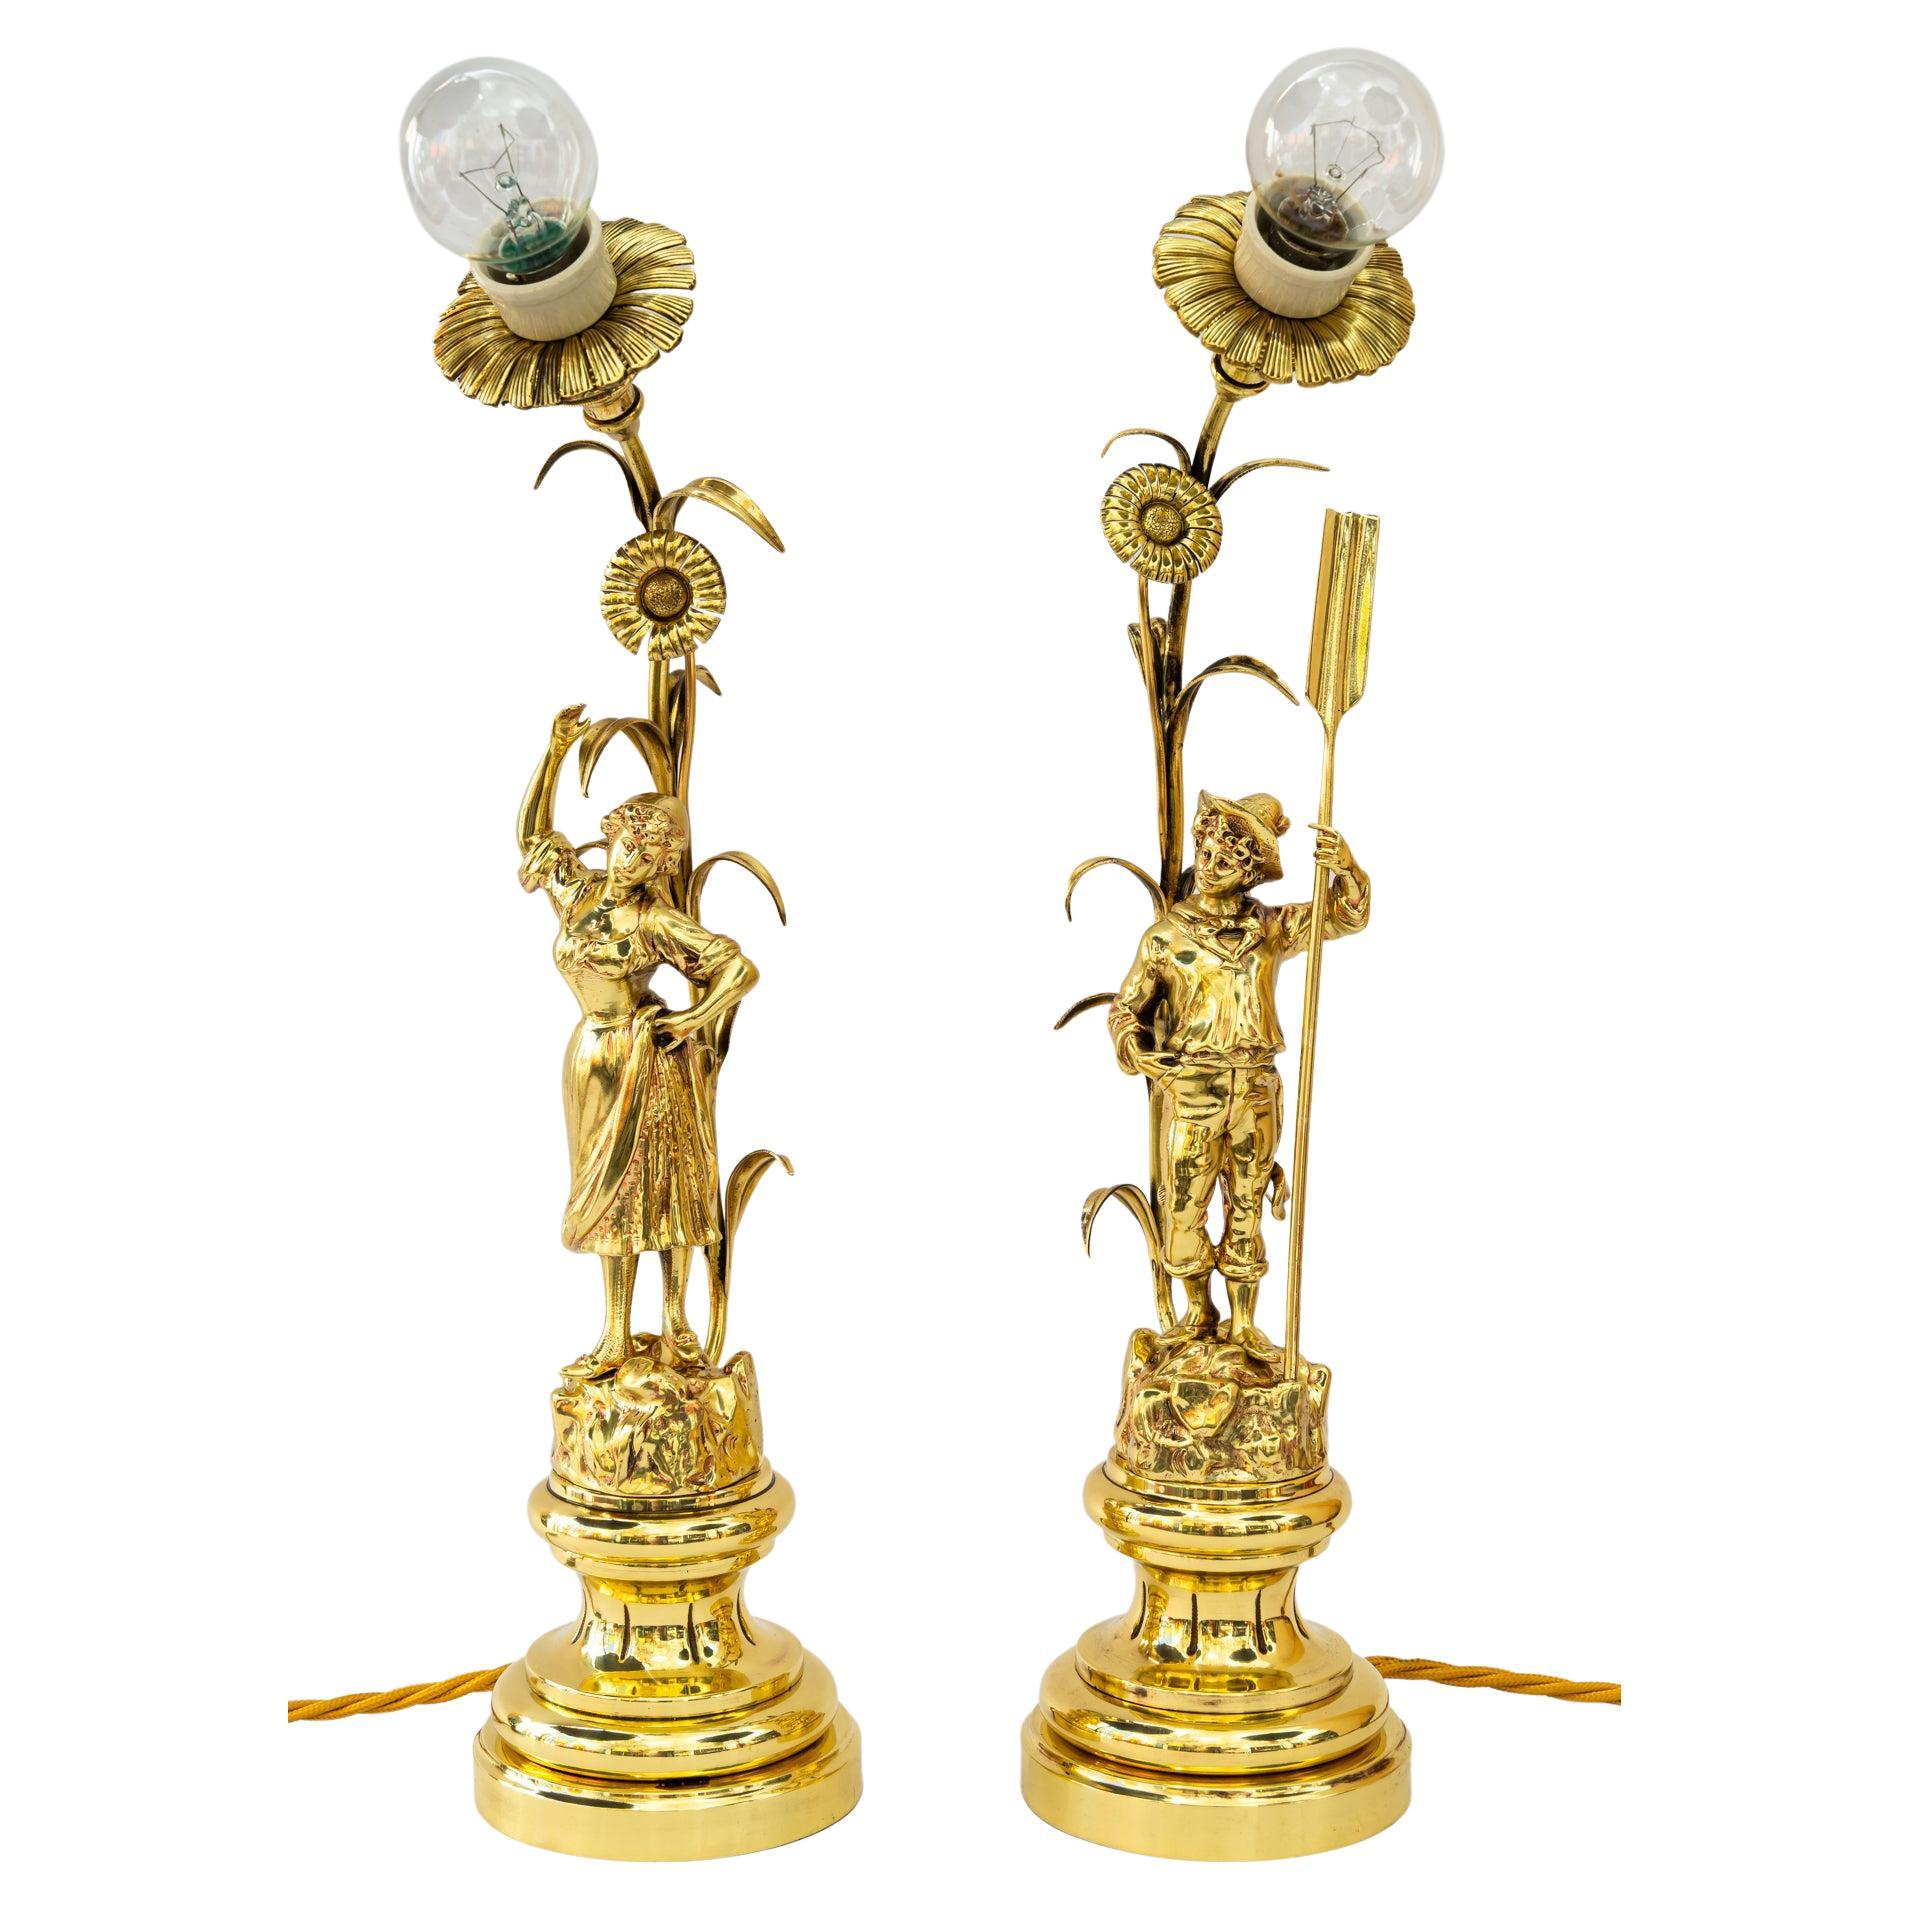 2 jugendstil table lamps vienna around 1908 For Sale